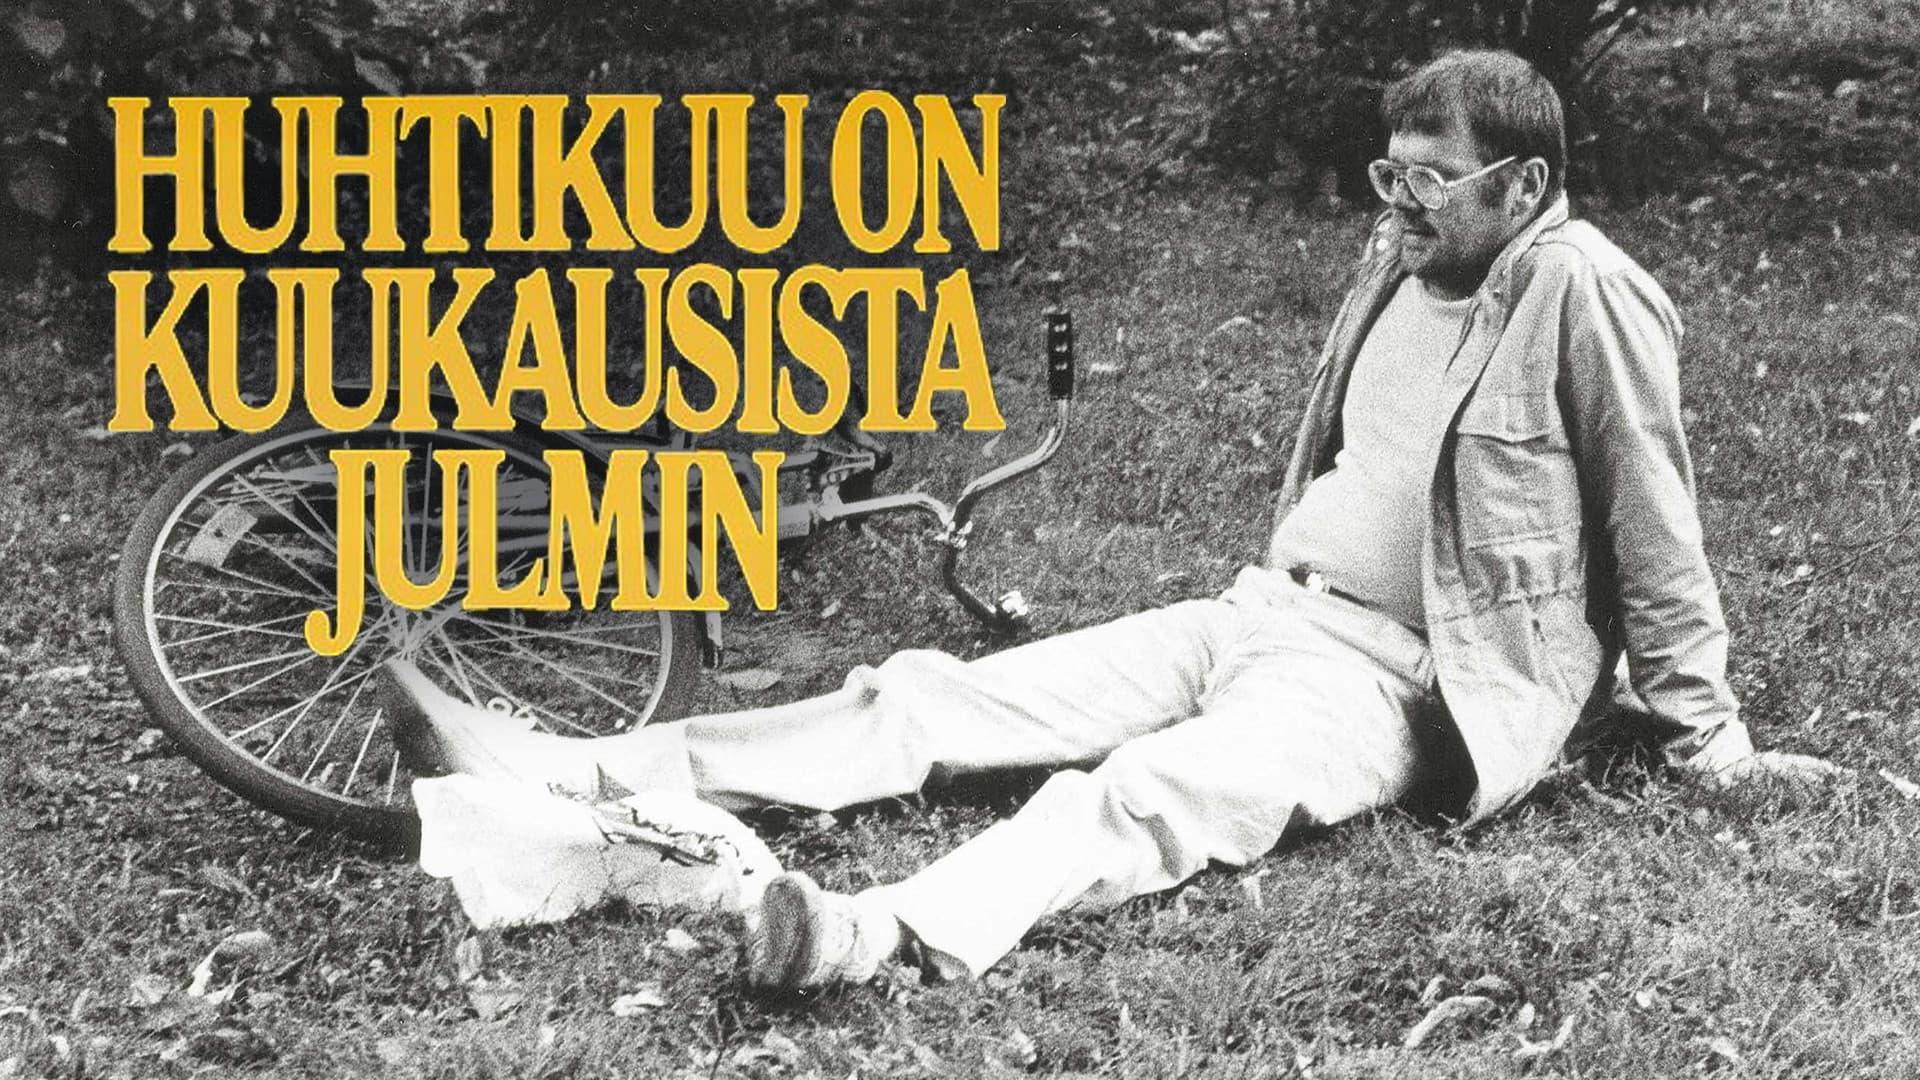 Pekka Saaristo backdrop